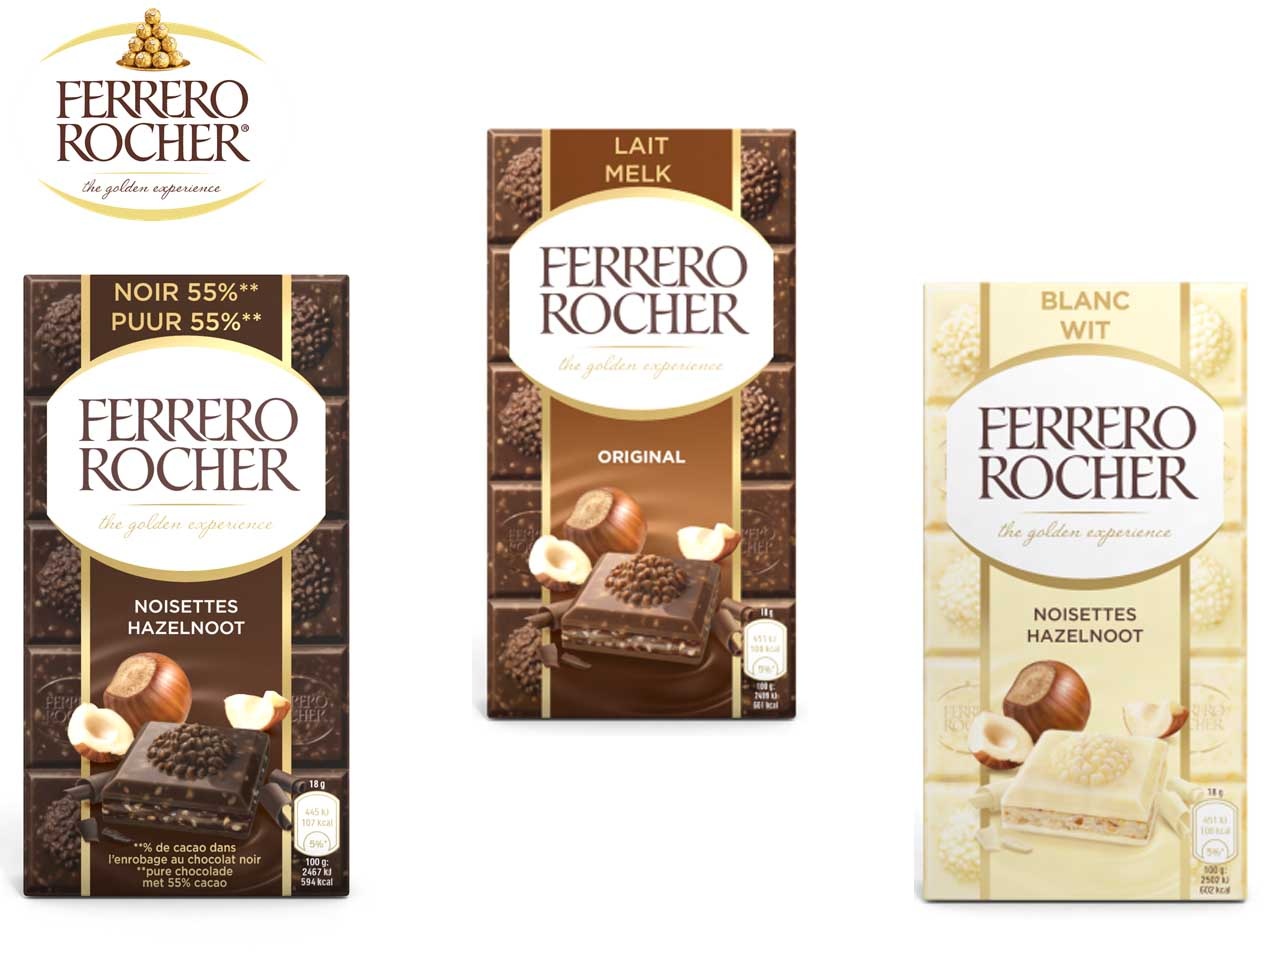 Ferrero Rocher poursuit sa diversification avec sa nouvelle offre